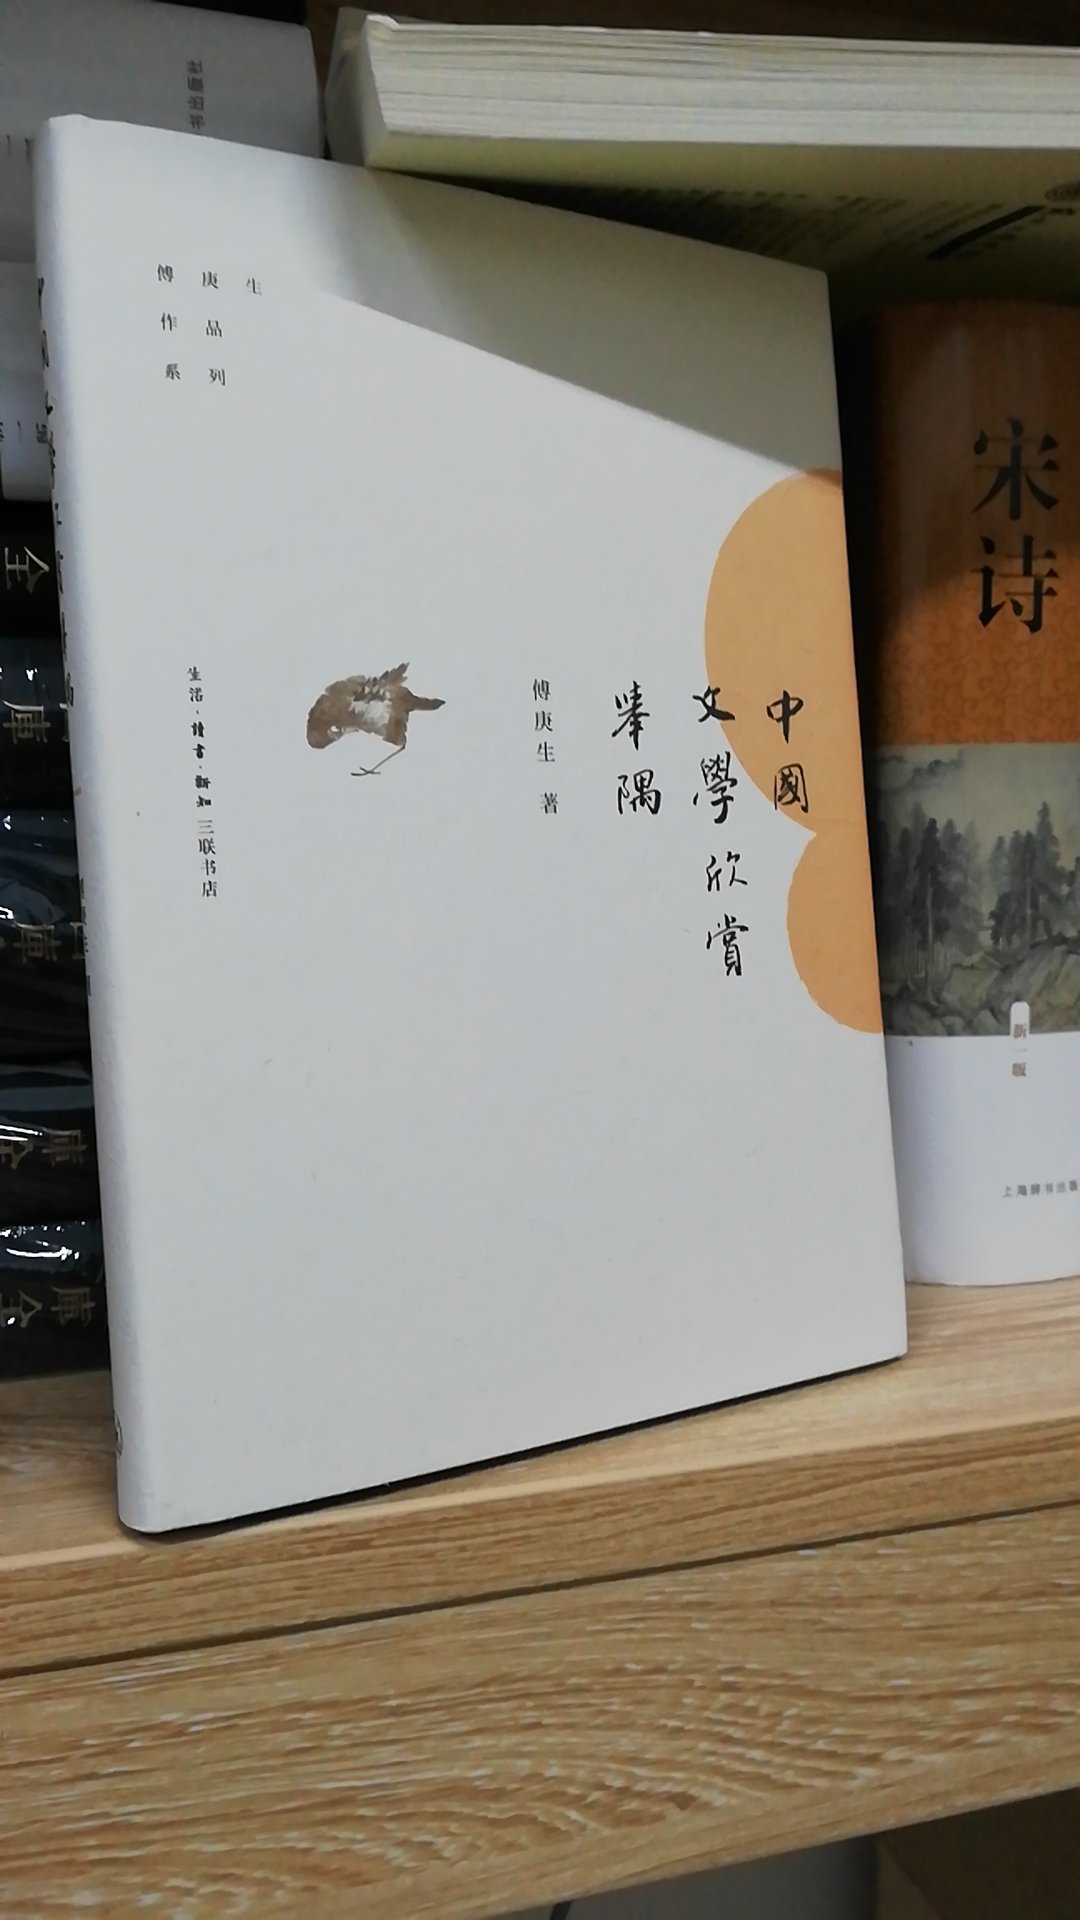 傅先生的书，西大神话，可惜一直没读